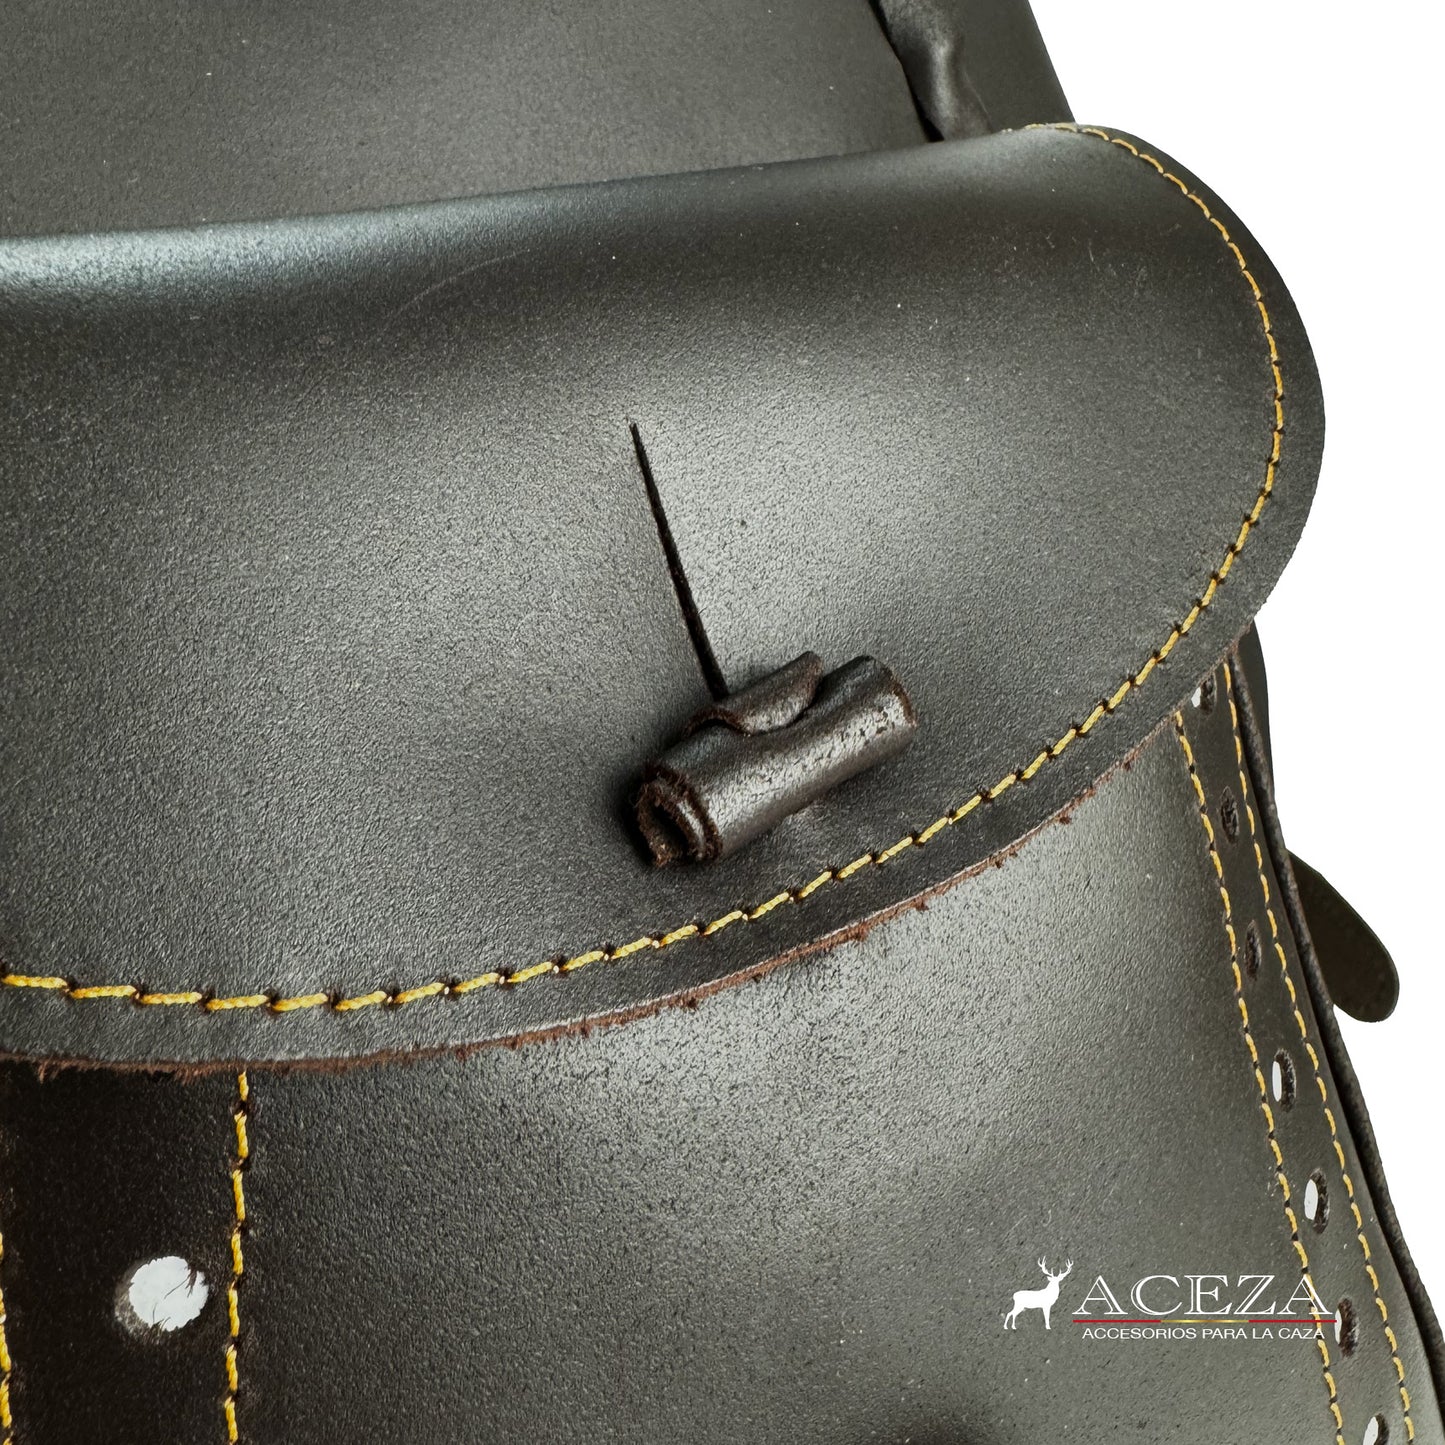 Detalles del bolsillo delantero del morral de caza, ofreciendo acceso rápido y conveniente a tus accesorios de caza. Descubre la comodidad en ACEZA.